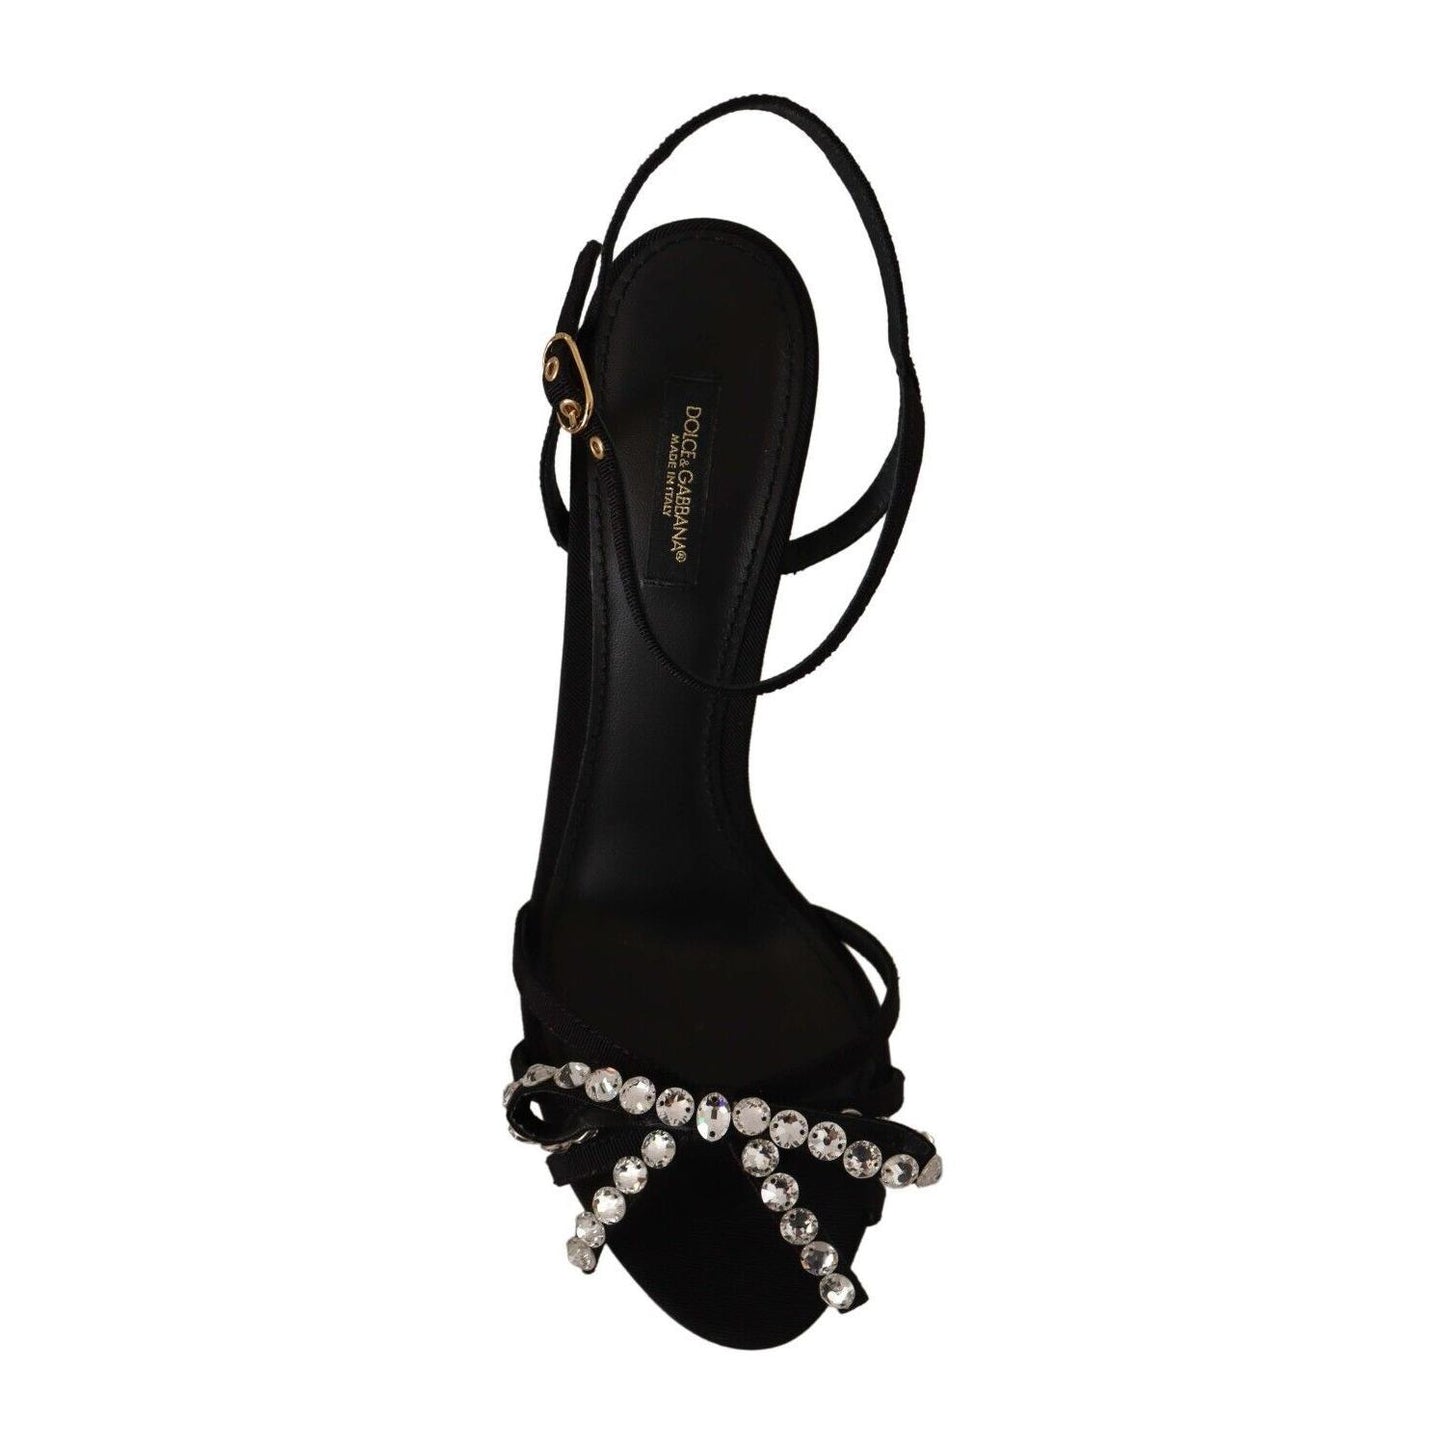 Dolce & Gabbana Elegant Black Viscose Ankle Strap Sandals with Crystals black-crystals-ankle-strap-heels-sandals-shoes